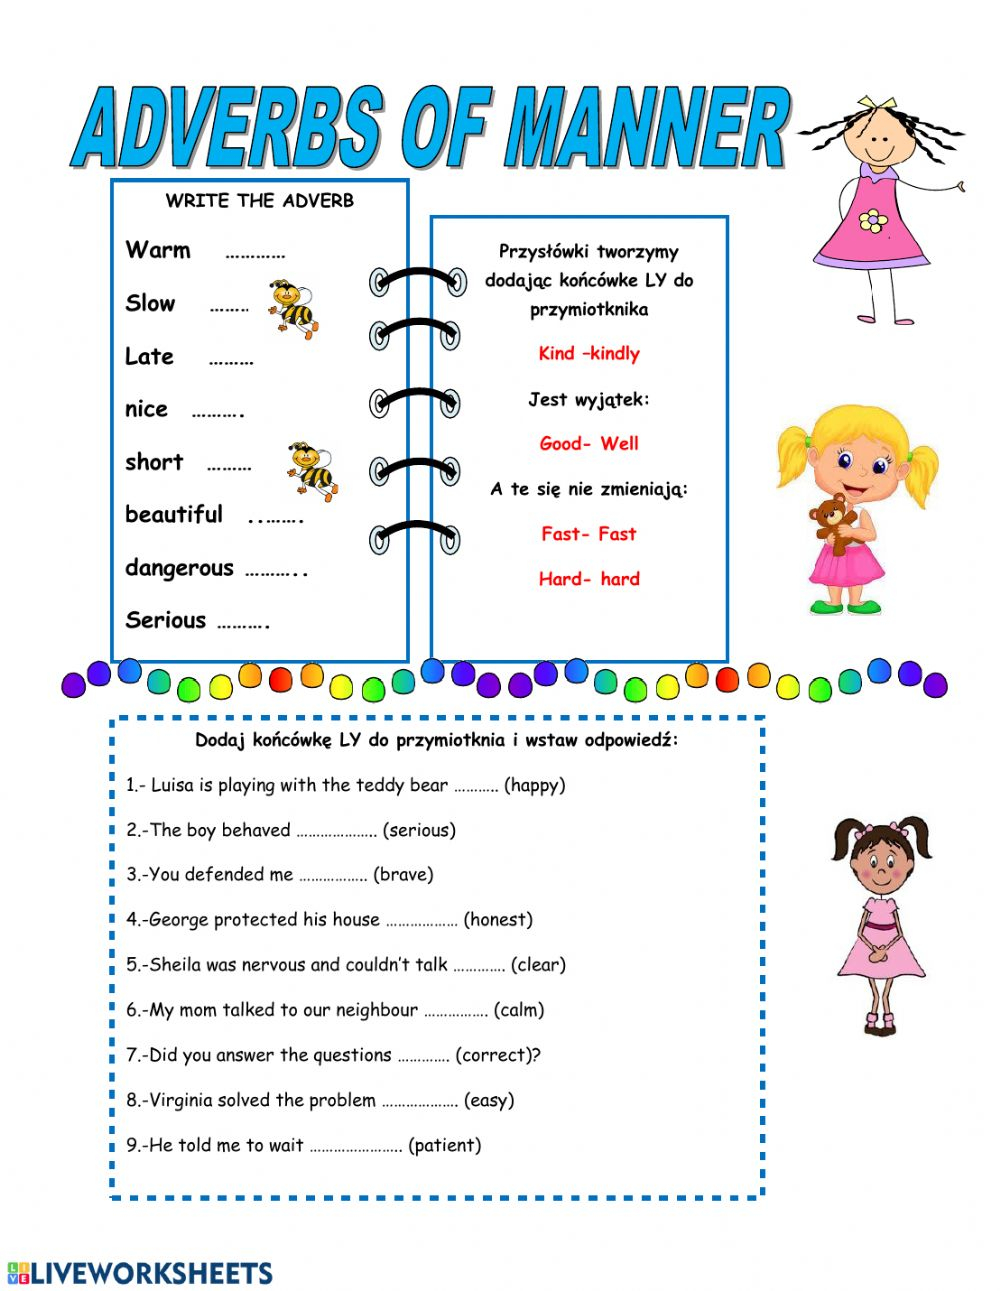 adverb-of-manner-worksheets-for-grade-3-adverbworksheets